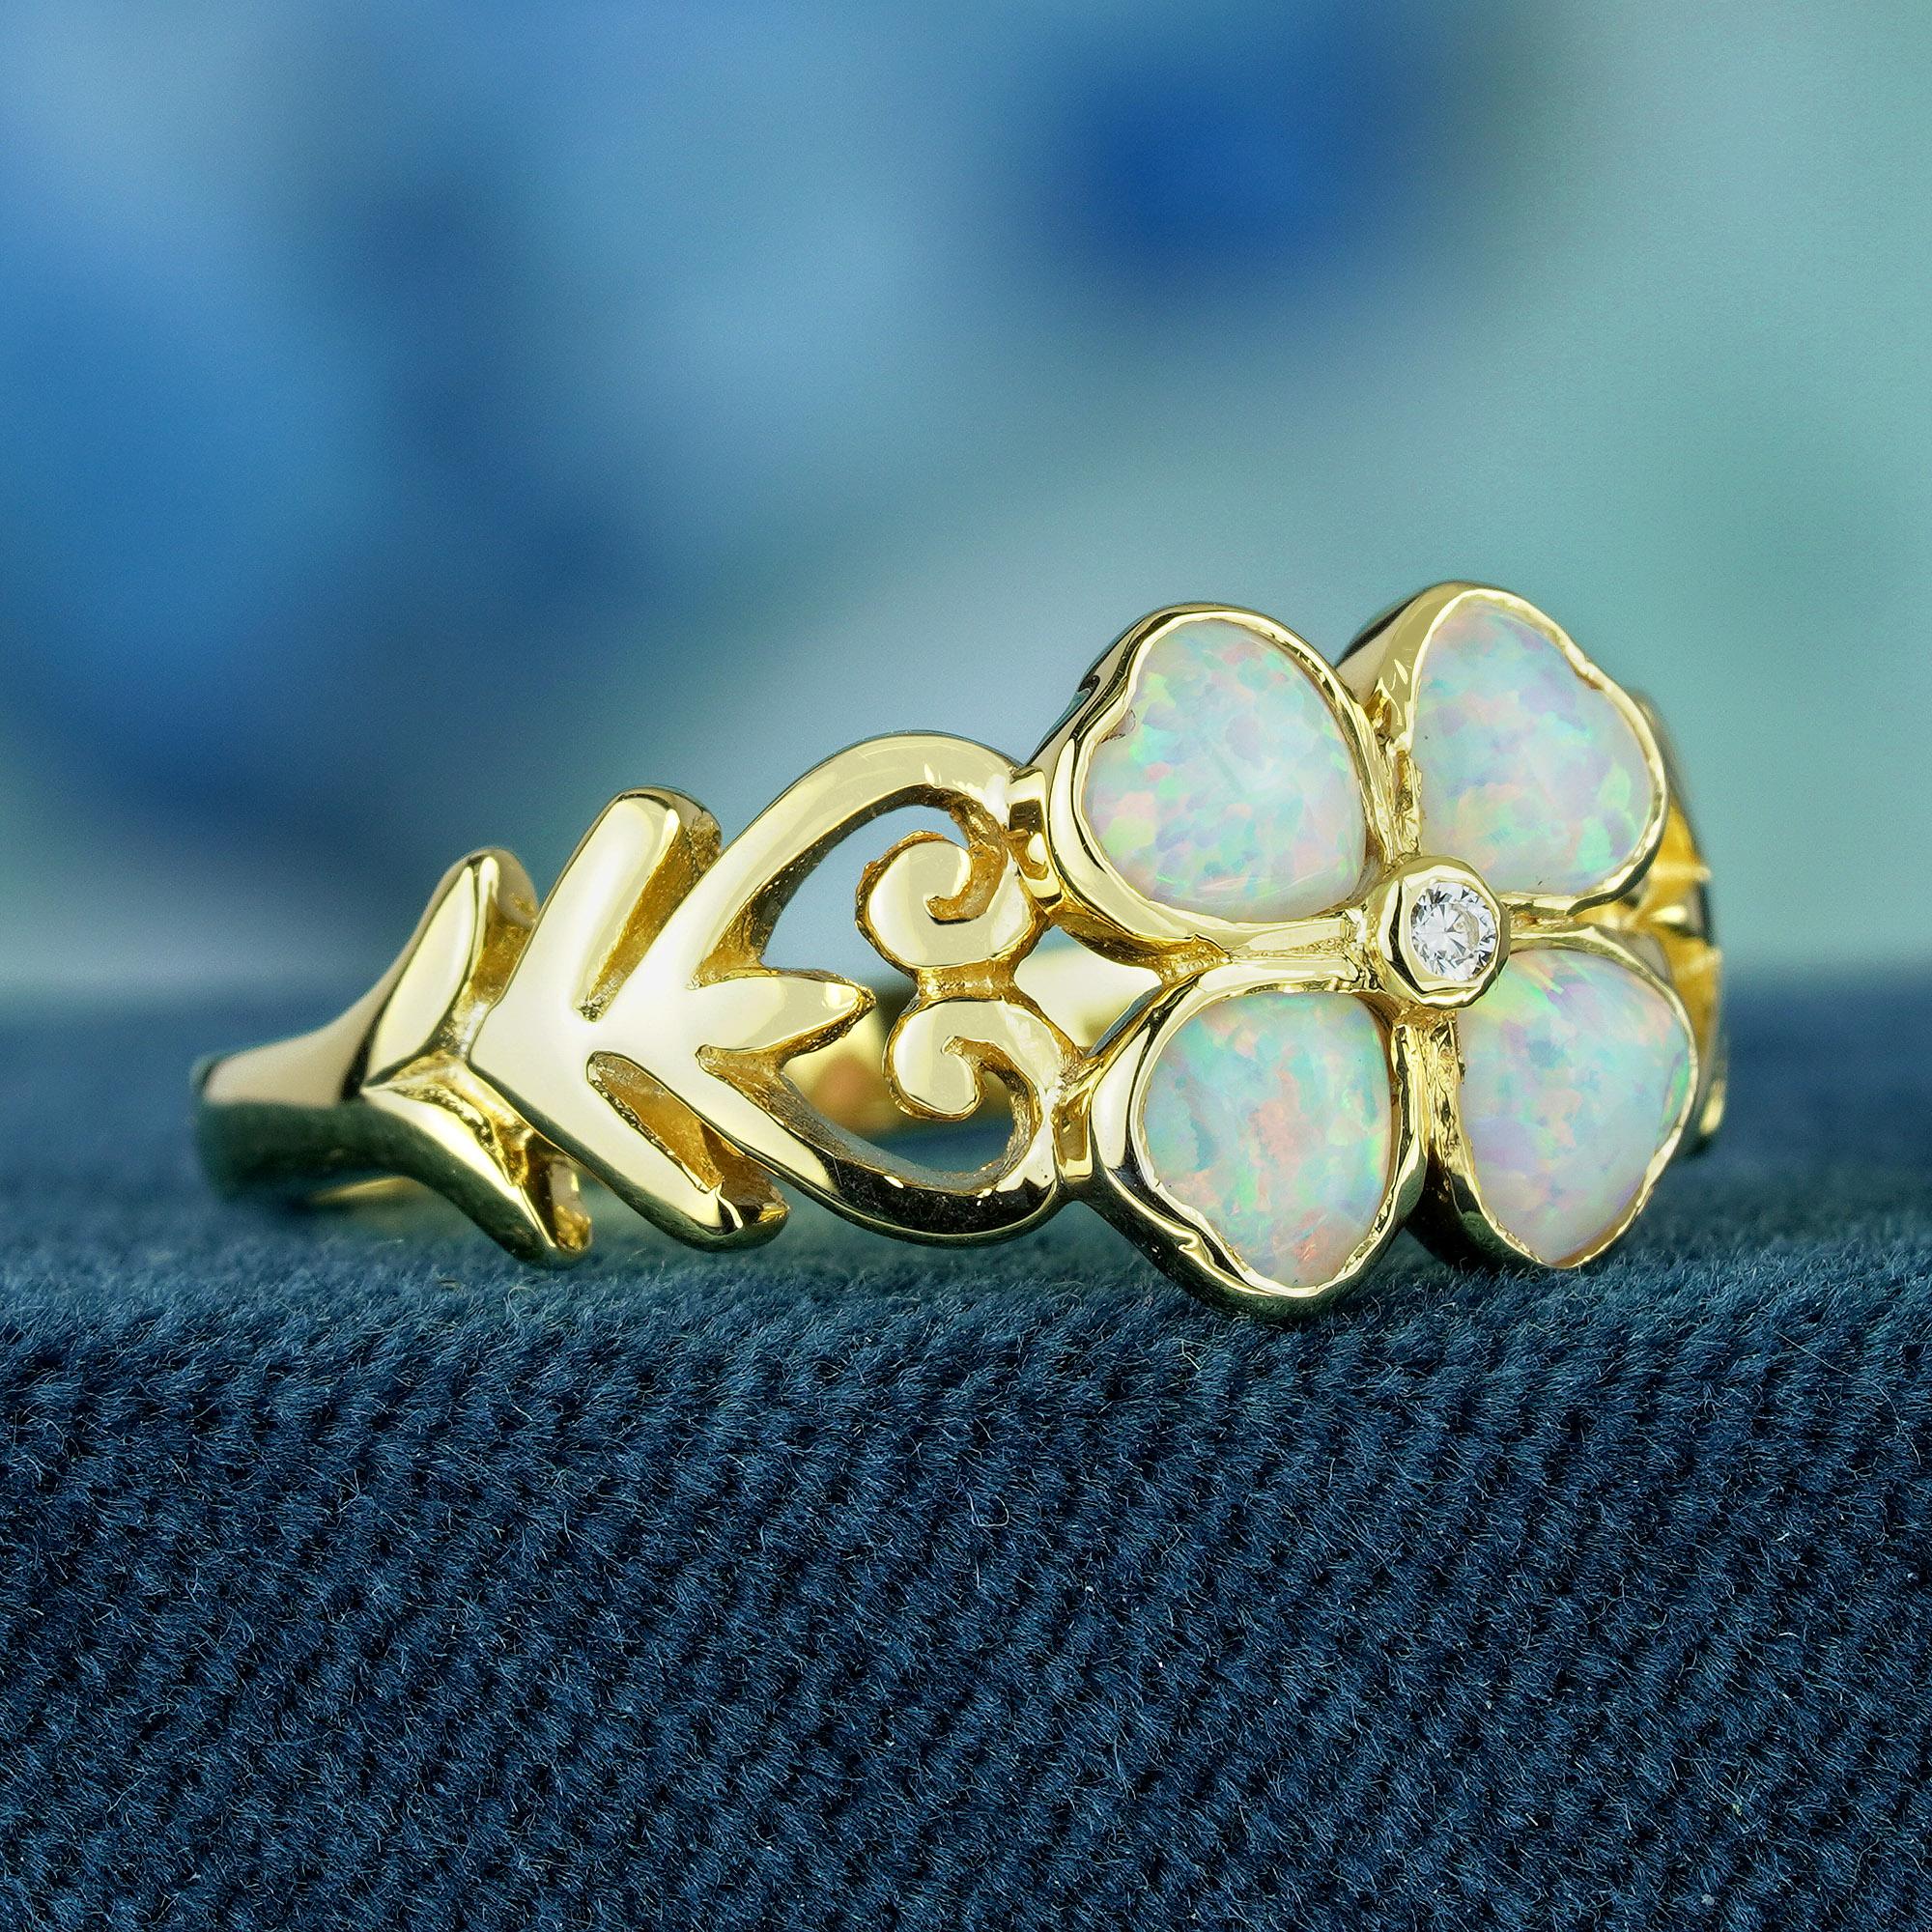 Tauchen Sie ein in die Welt der Vintage-Romantik und der zeitlosen Eleganz mit unserem Opal- und Diamantring im Vintage-Stil mit Kleeblättern. Dieses fesselnde Schmuckstück aus strahlendem Gelbgold besteht aus Opalen, die in vier herzförmigen Rahmen